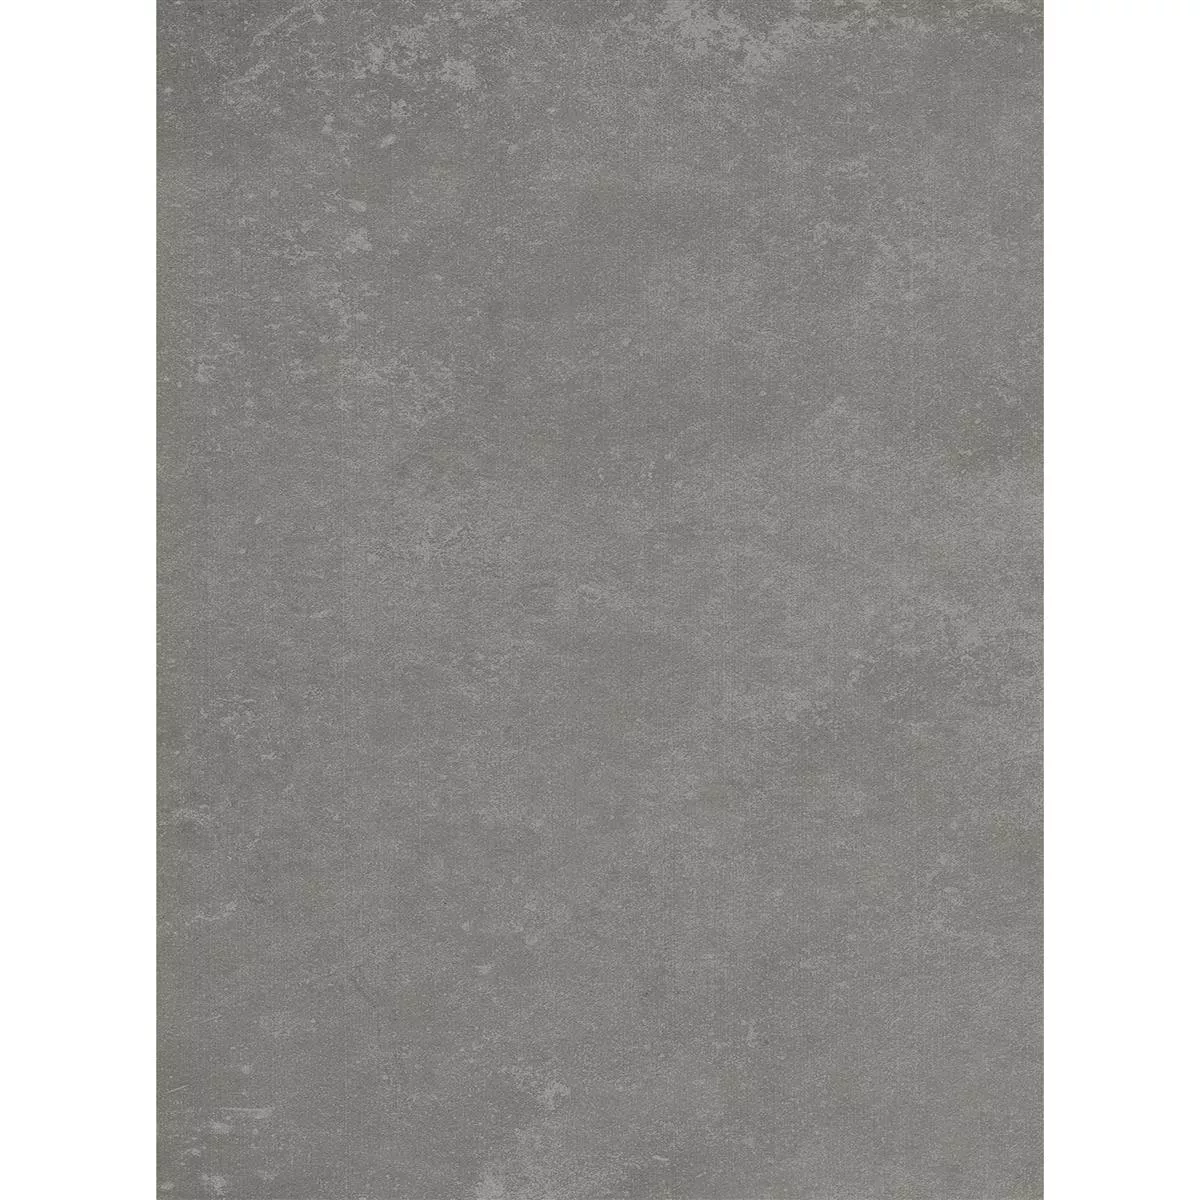 Ladrilhos Nepal Cinza Bege 60x120x0,7cm